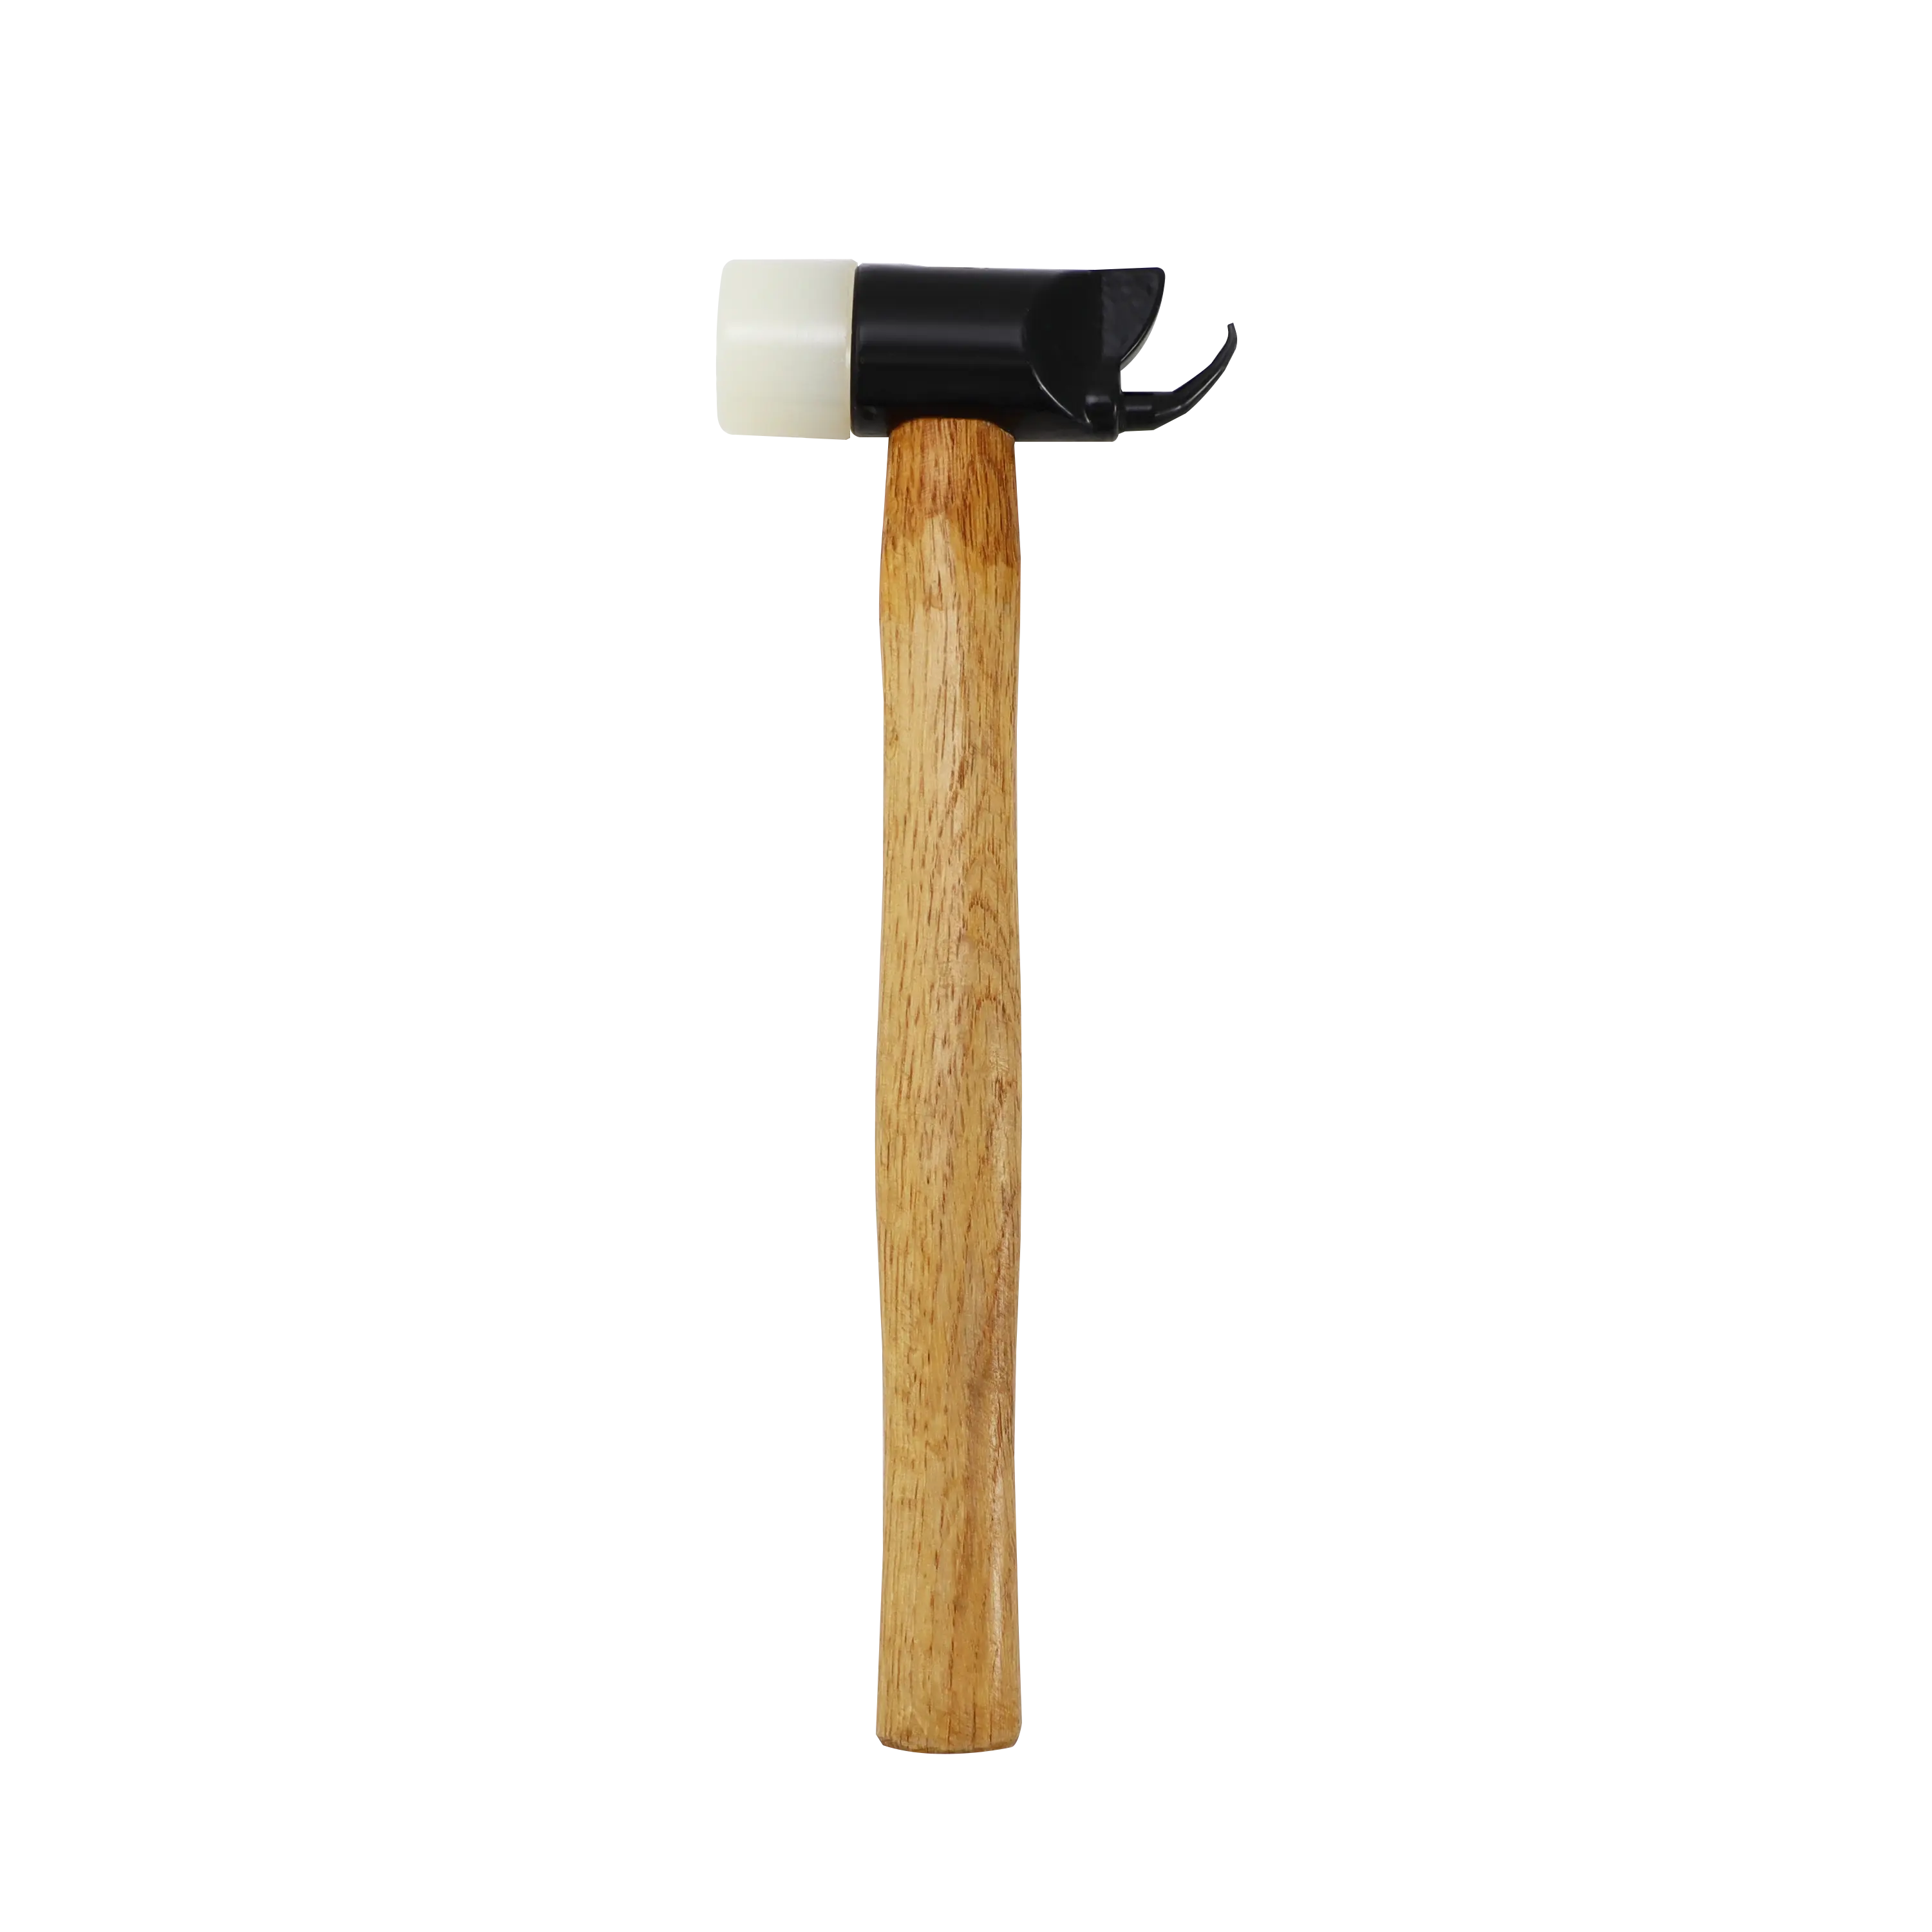 Martelo de instalação de ferramentas de bloco de equilíbrio de alta qualidade, cabo de madeira antiderrapante, um martelo para duas aplicações